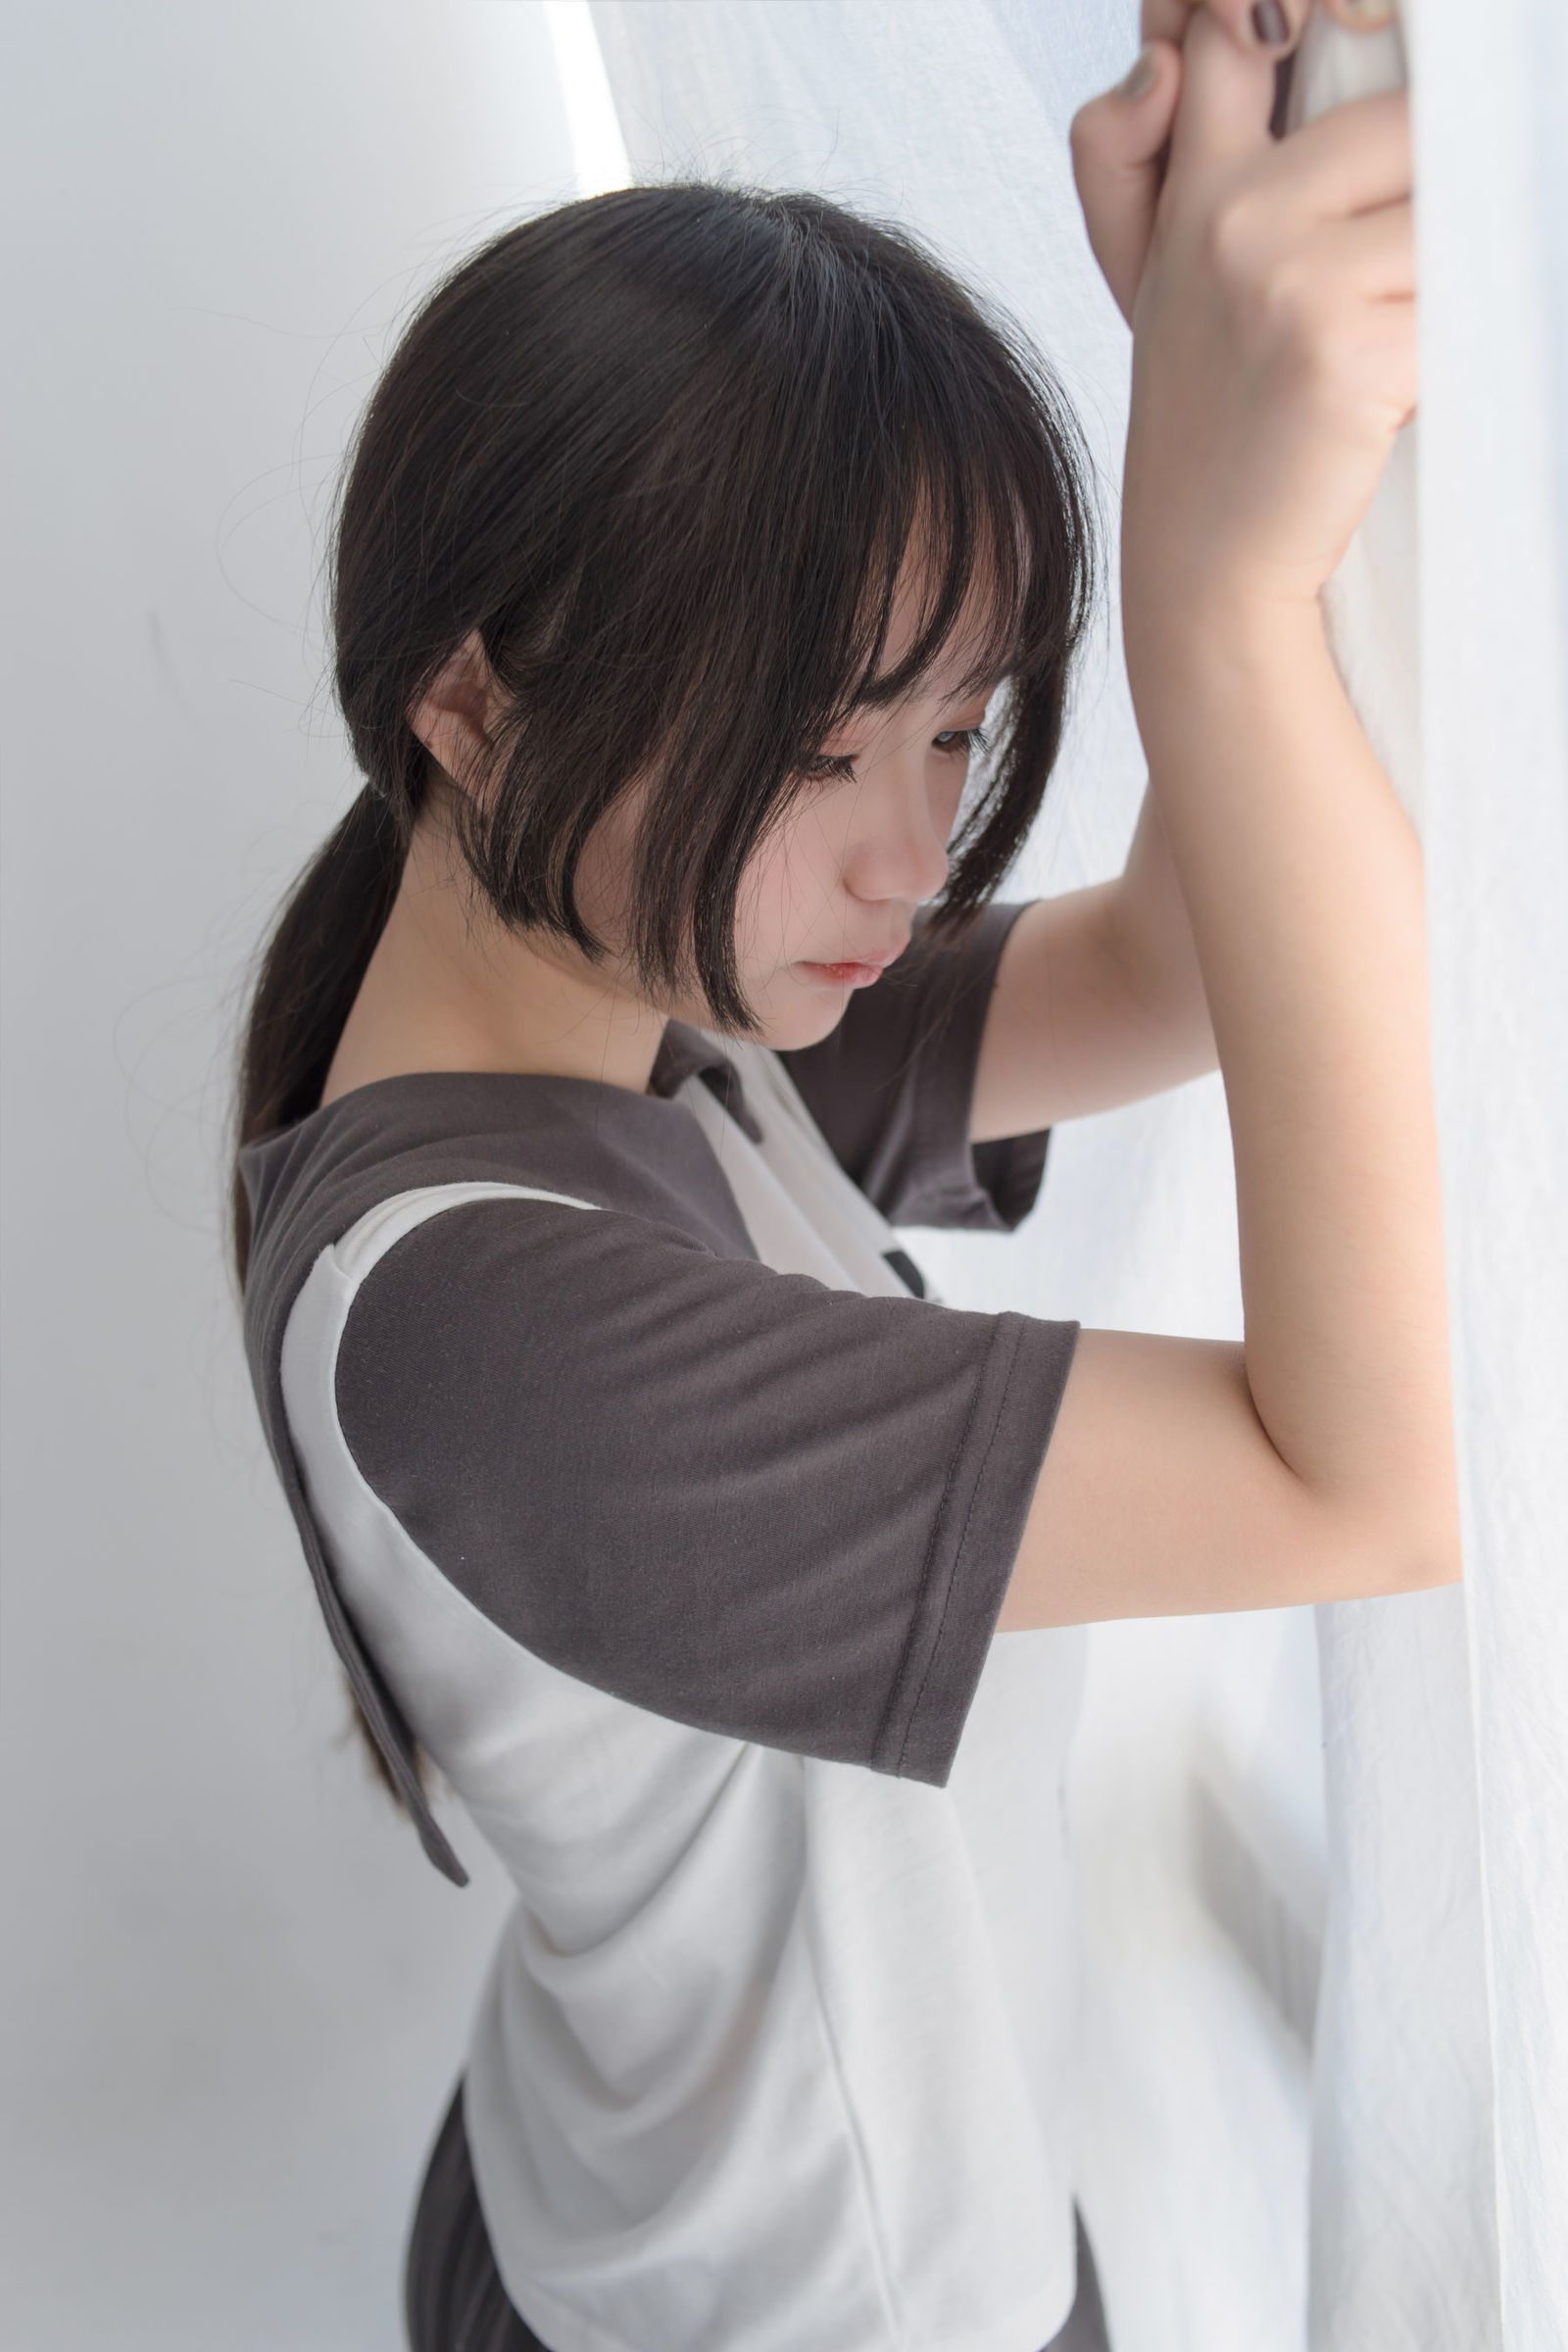 [轻兰映画] VOL.012 可爱短发少女的黑丝 写真套图4 